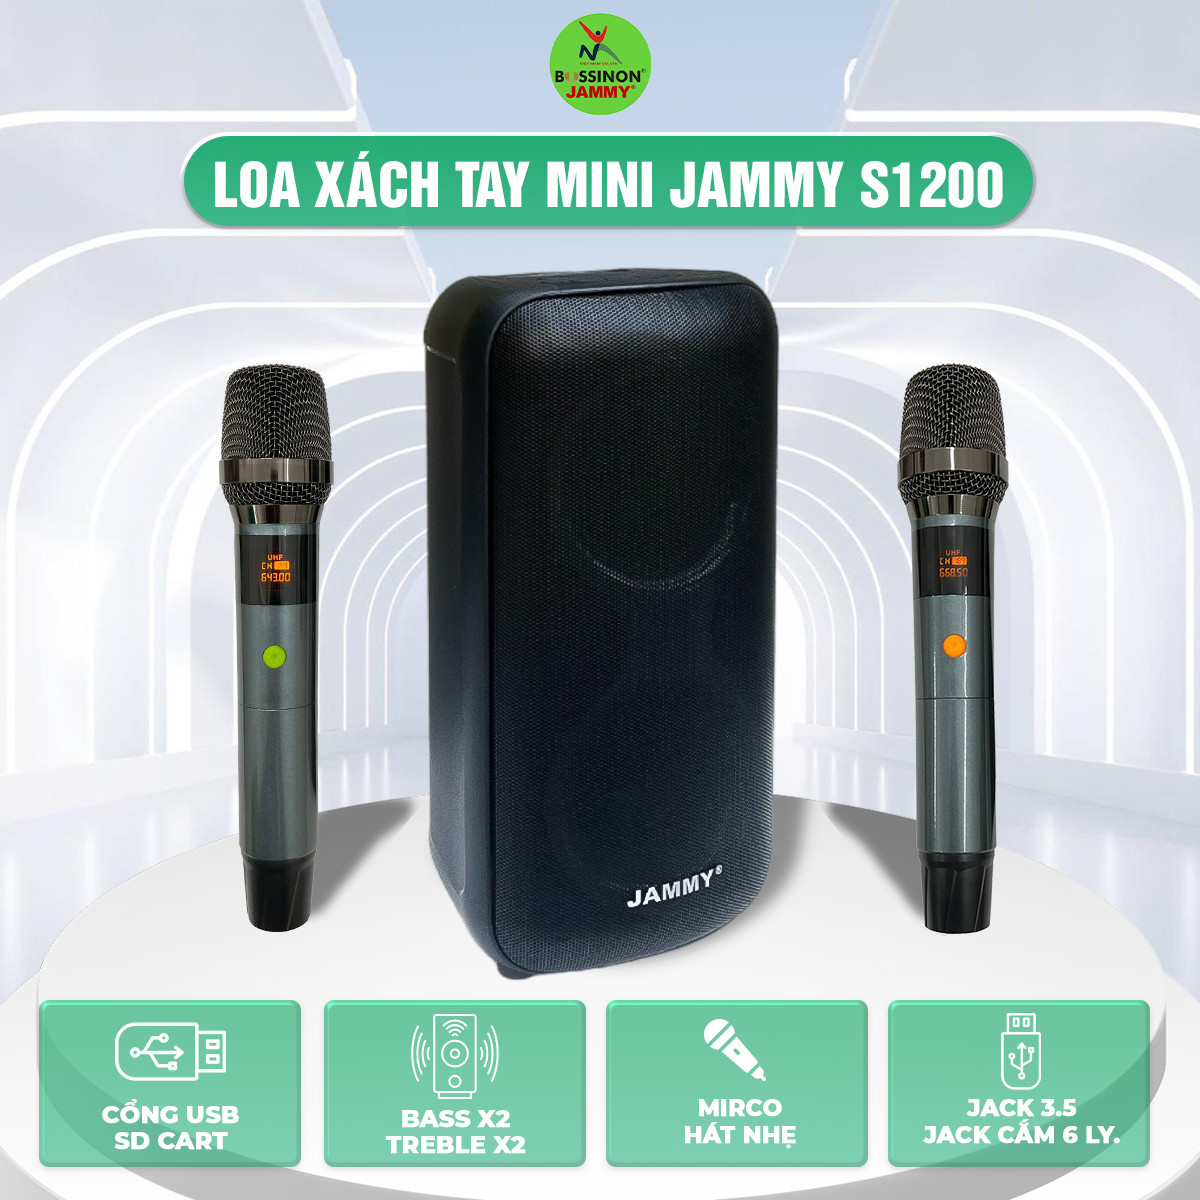 Loa xách tay mini Jammy S1200 - hàng chính hãng